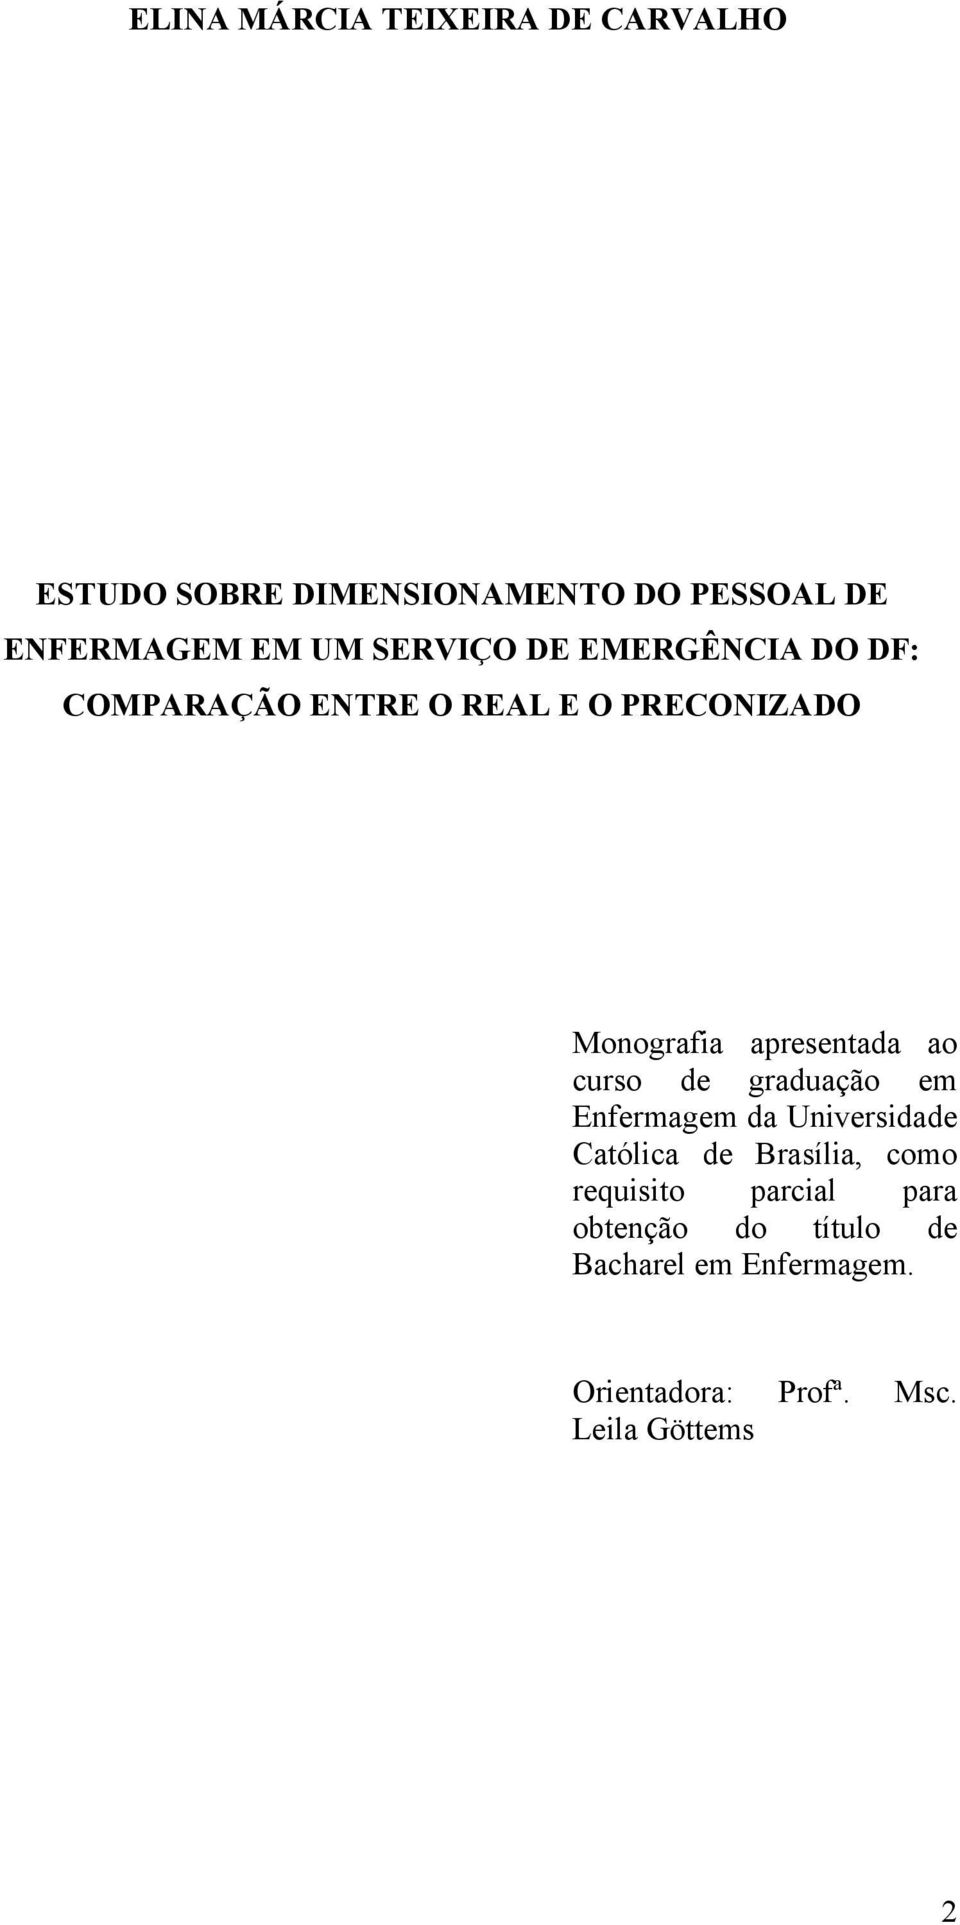 ao curso de graduação em Enfermagem da Universidade Católica de Brasília, como requisito